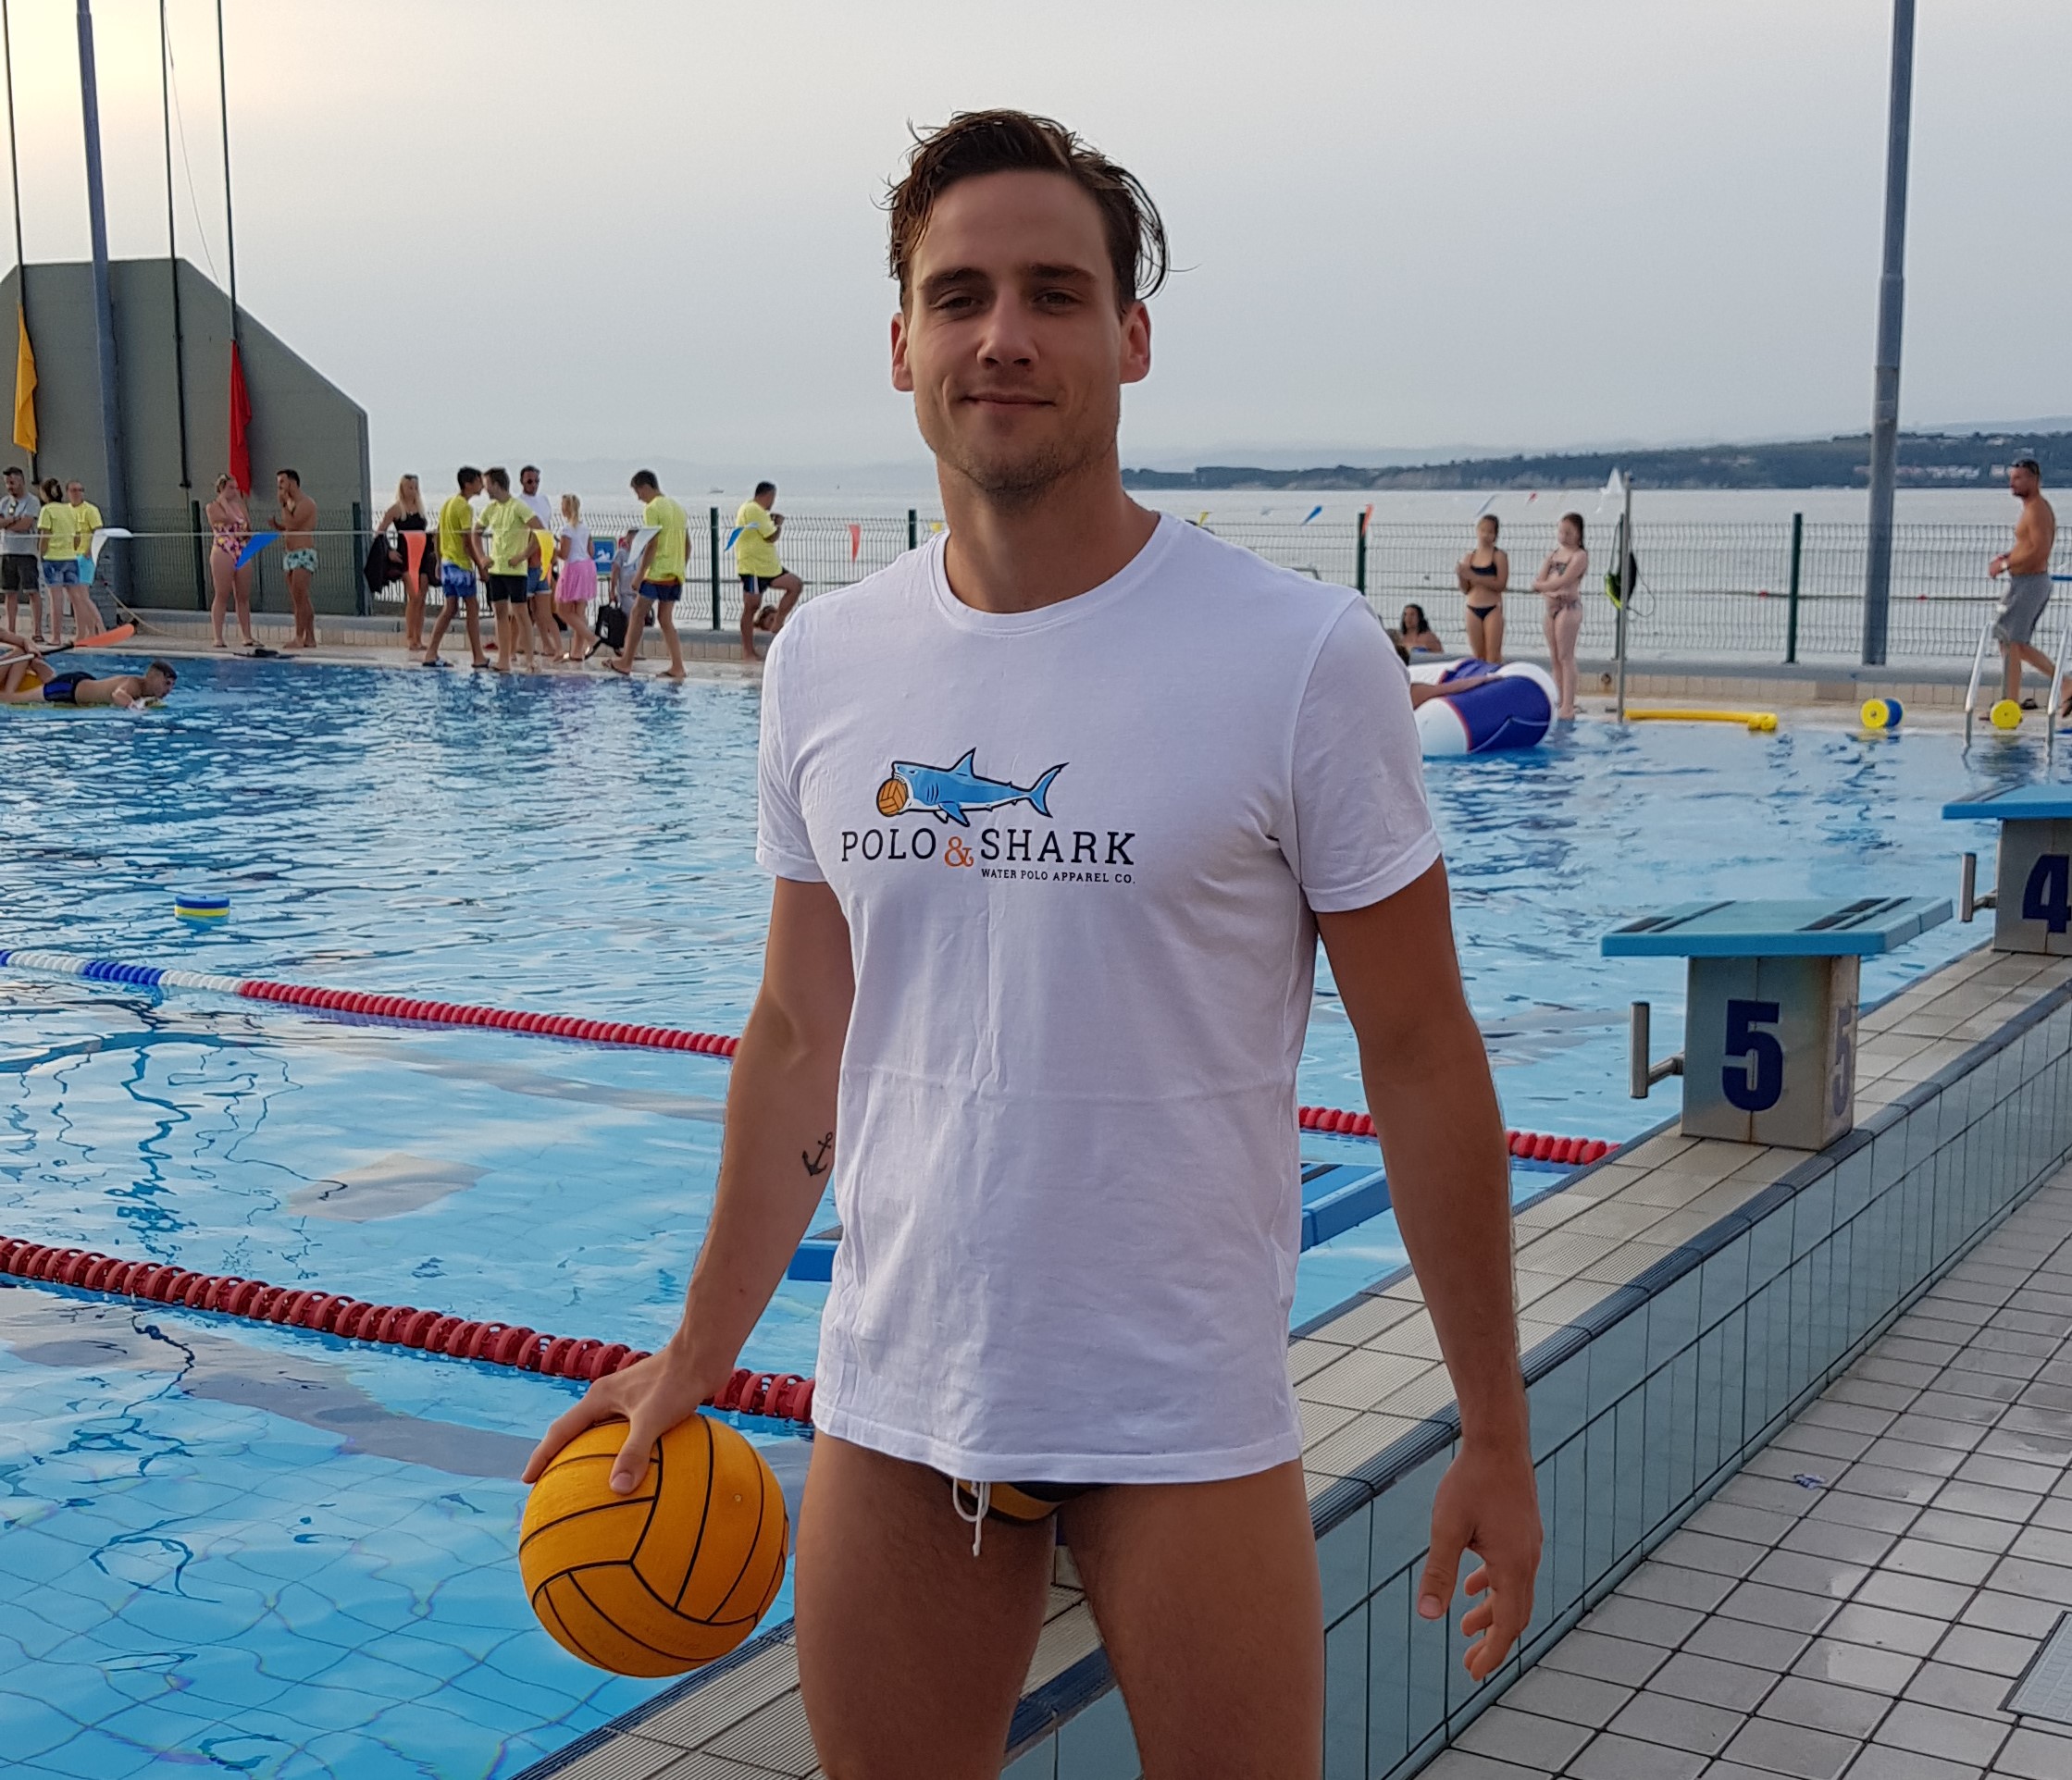 Uroš Fabič of waterpolo club esslingen from germany